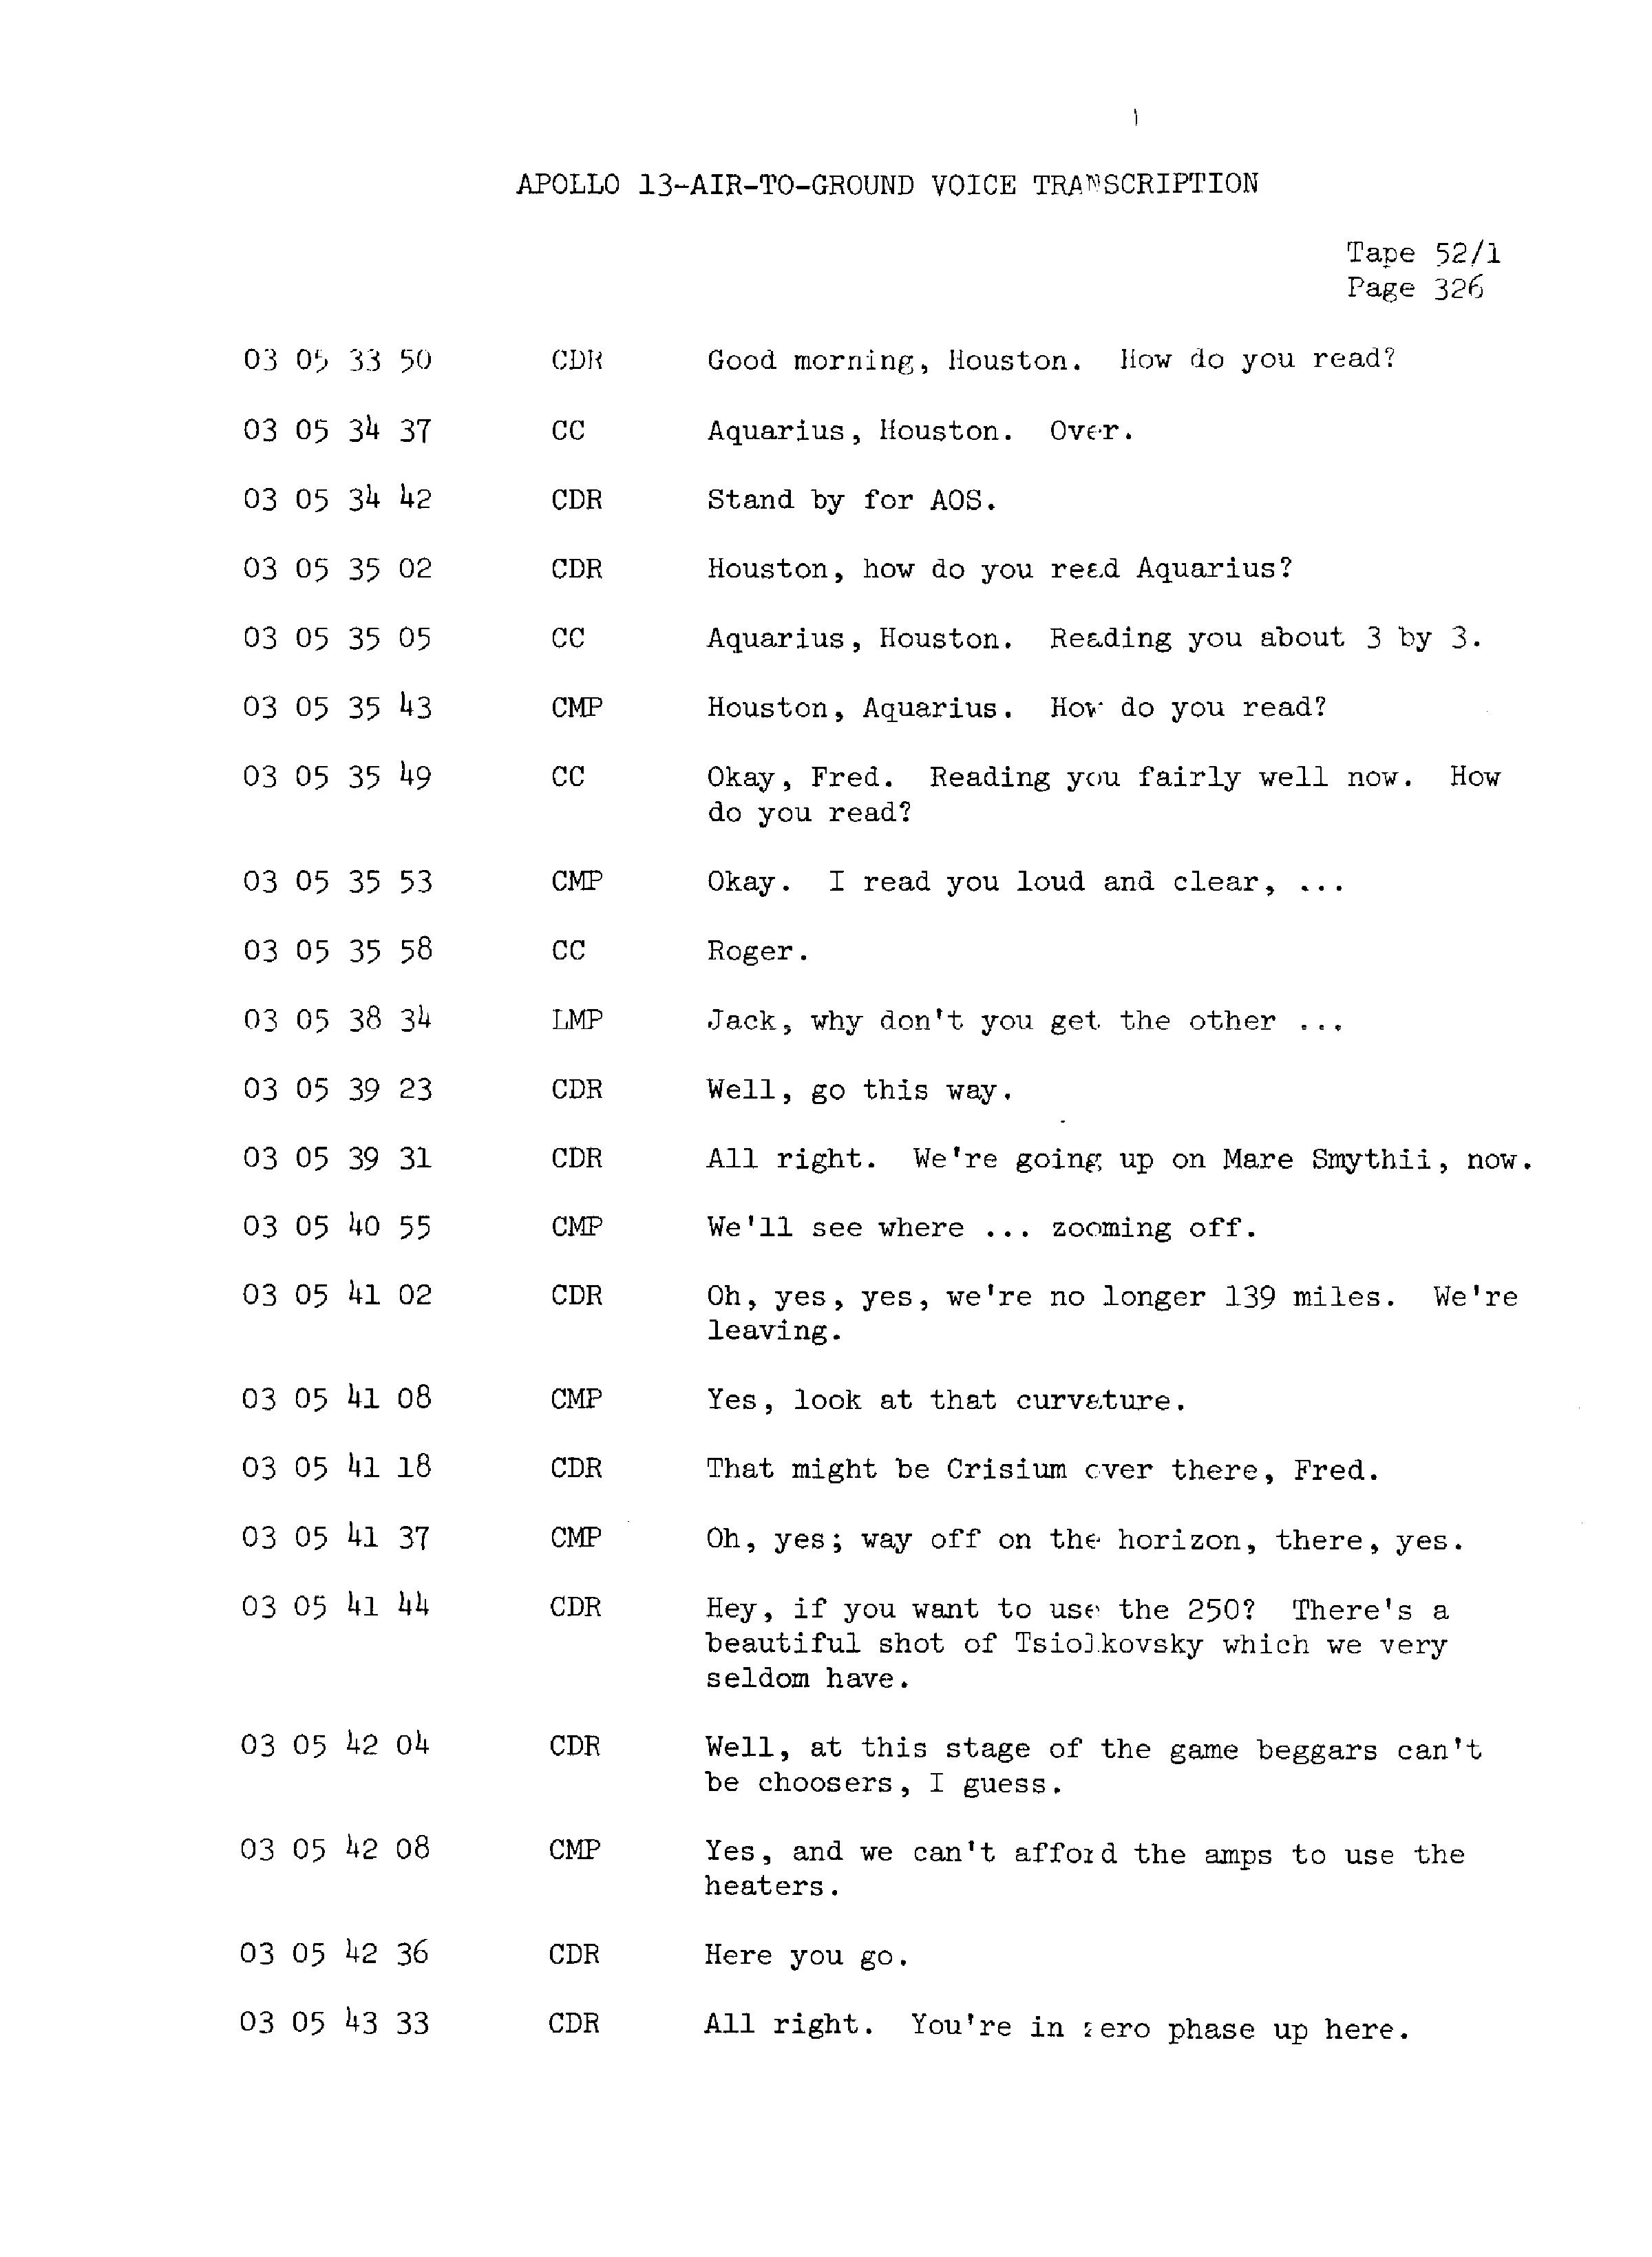 Page 333 of Apollo 13’s original transcript